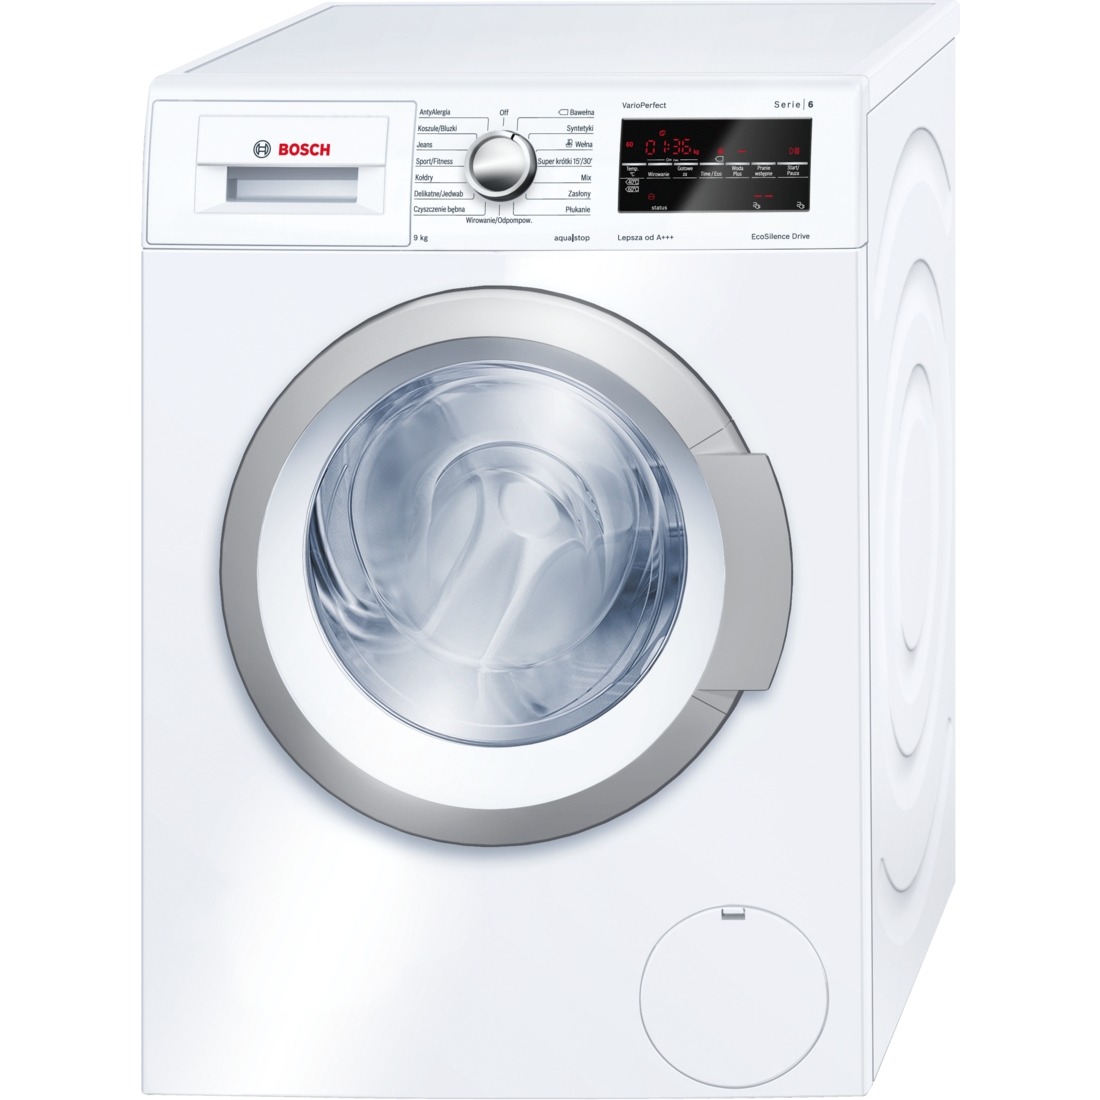 Máy giặt cửa trên và máy giặt cửa trước loại nào tốt hơn?